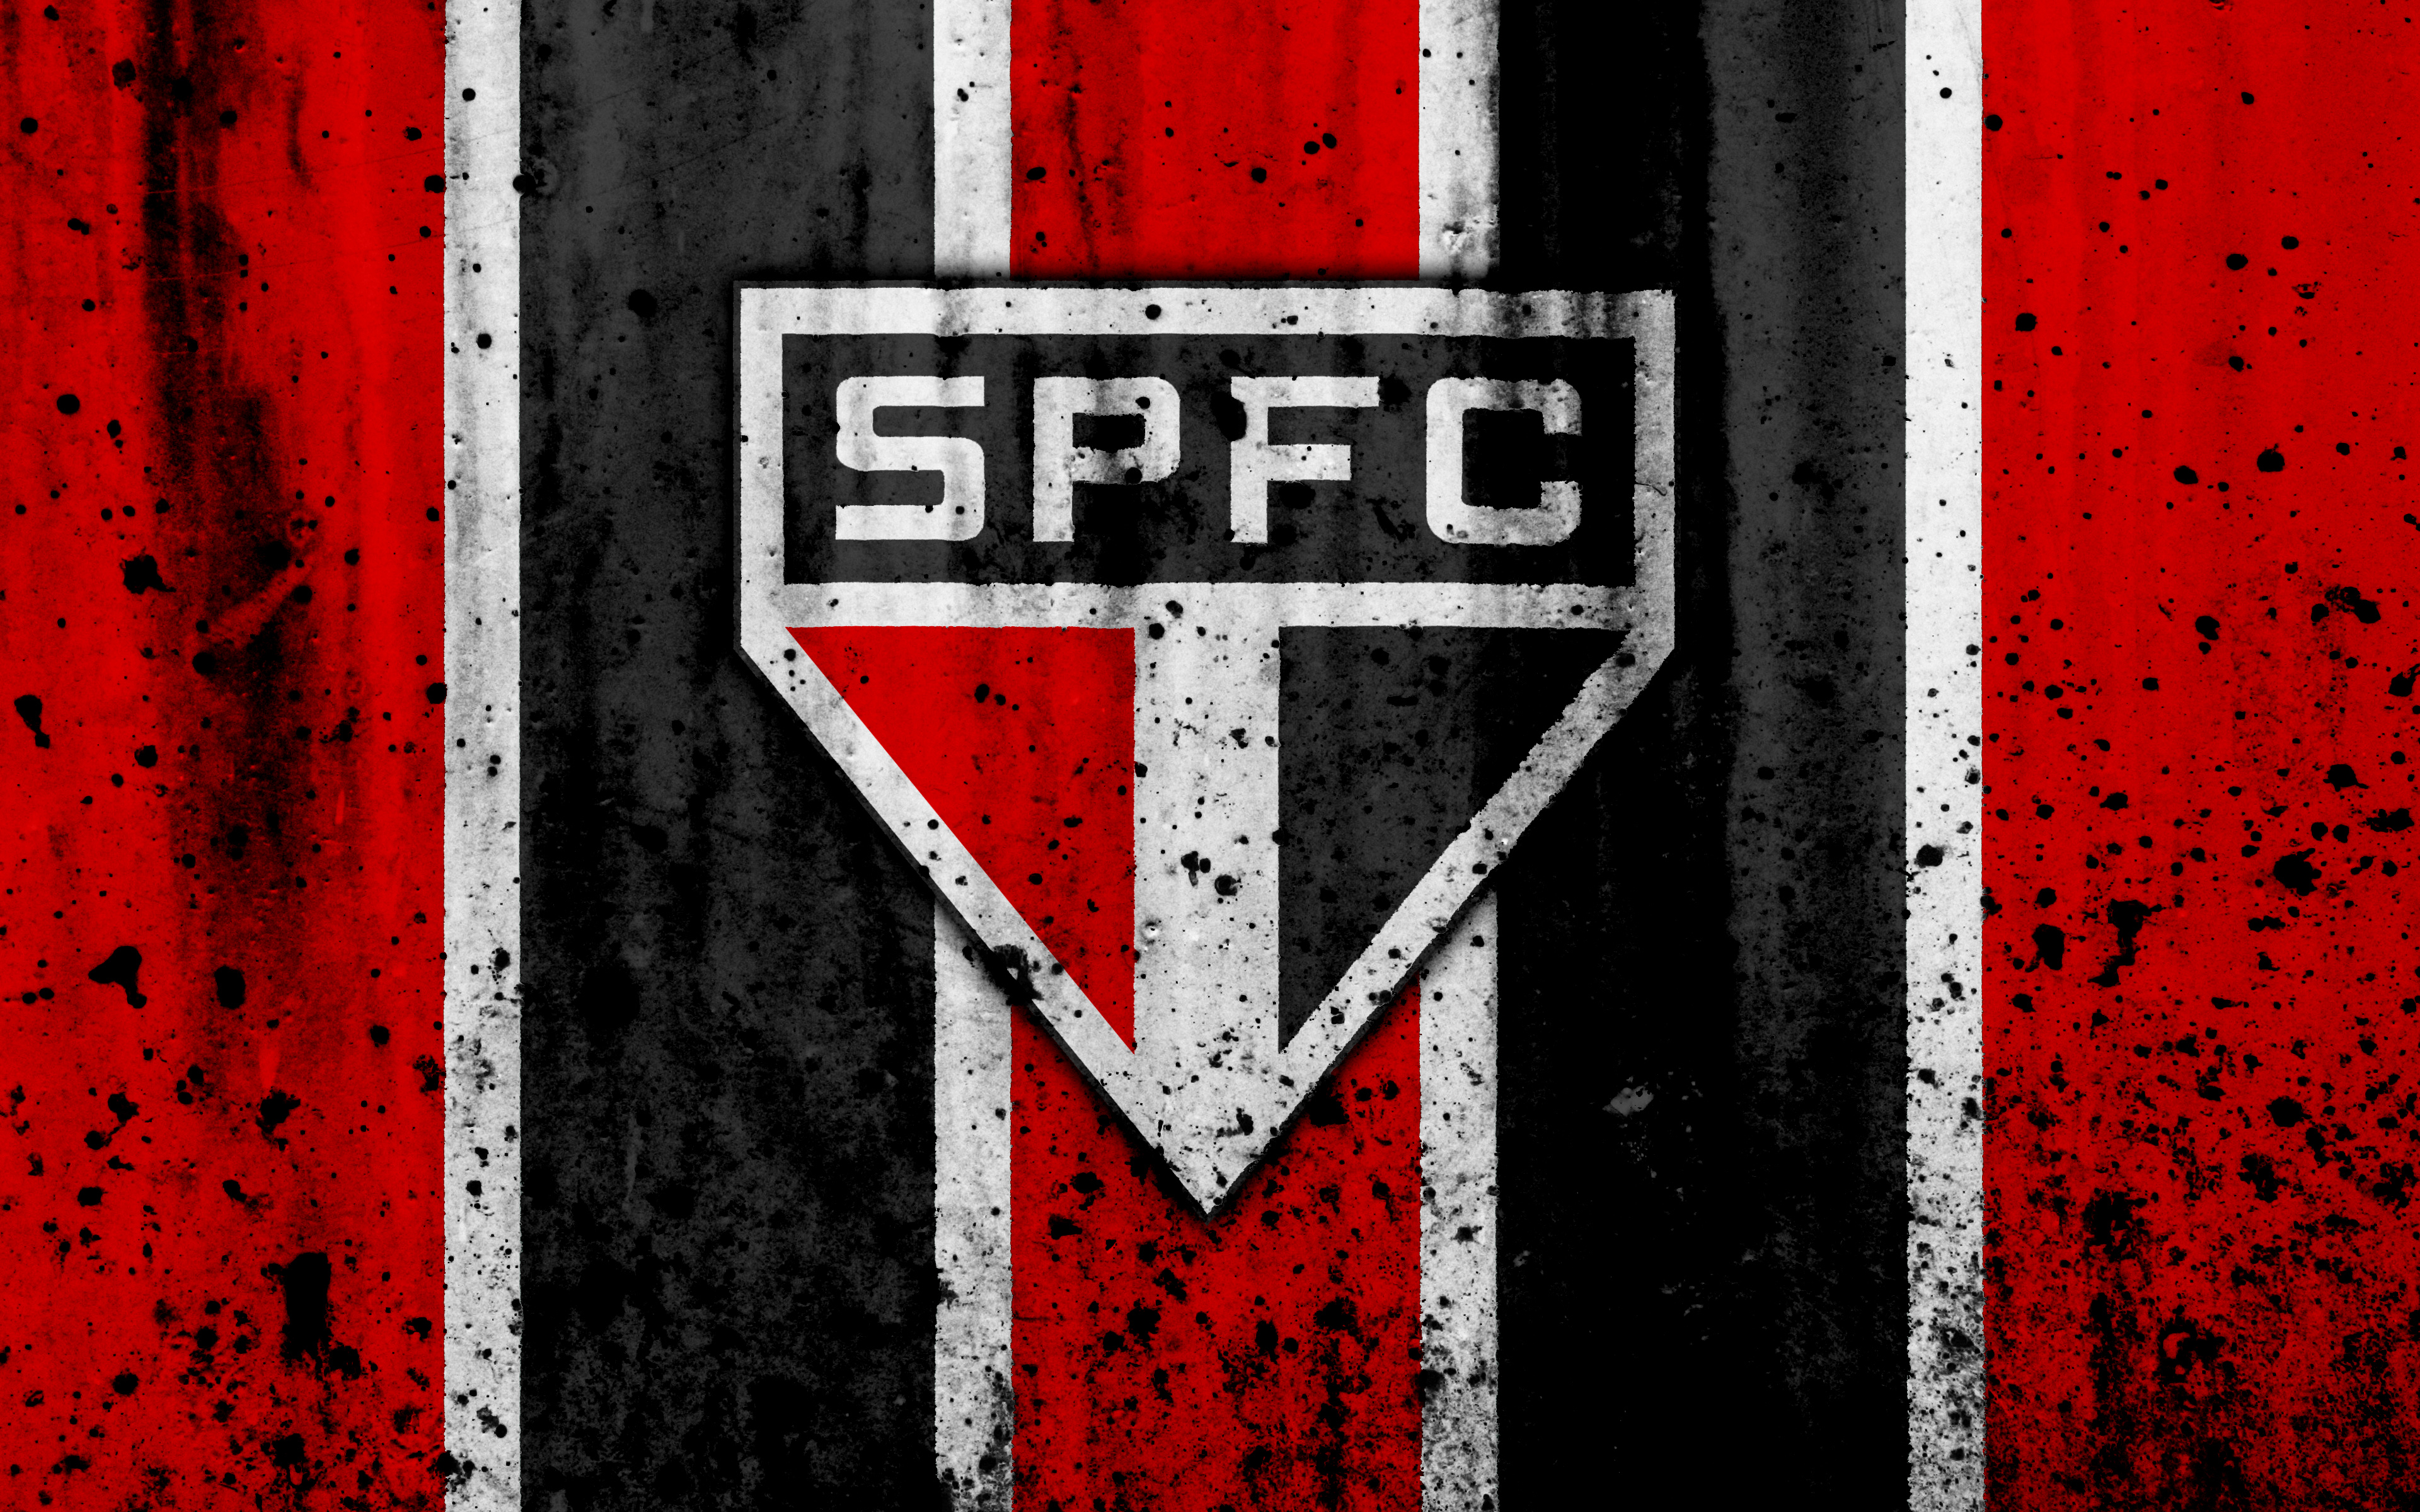 São Paulo FC 4k Ultra HD Wallpaper